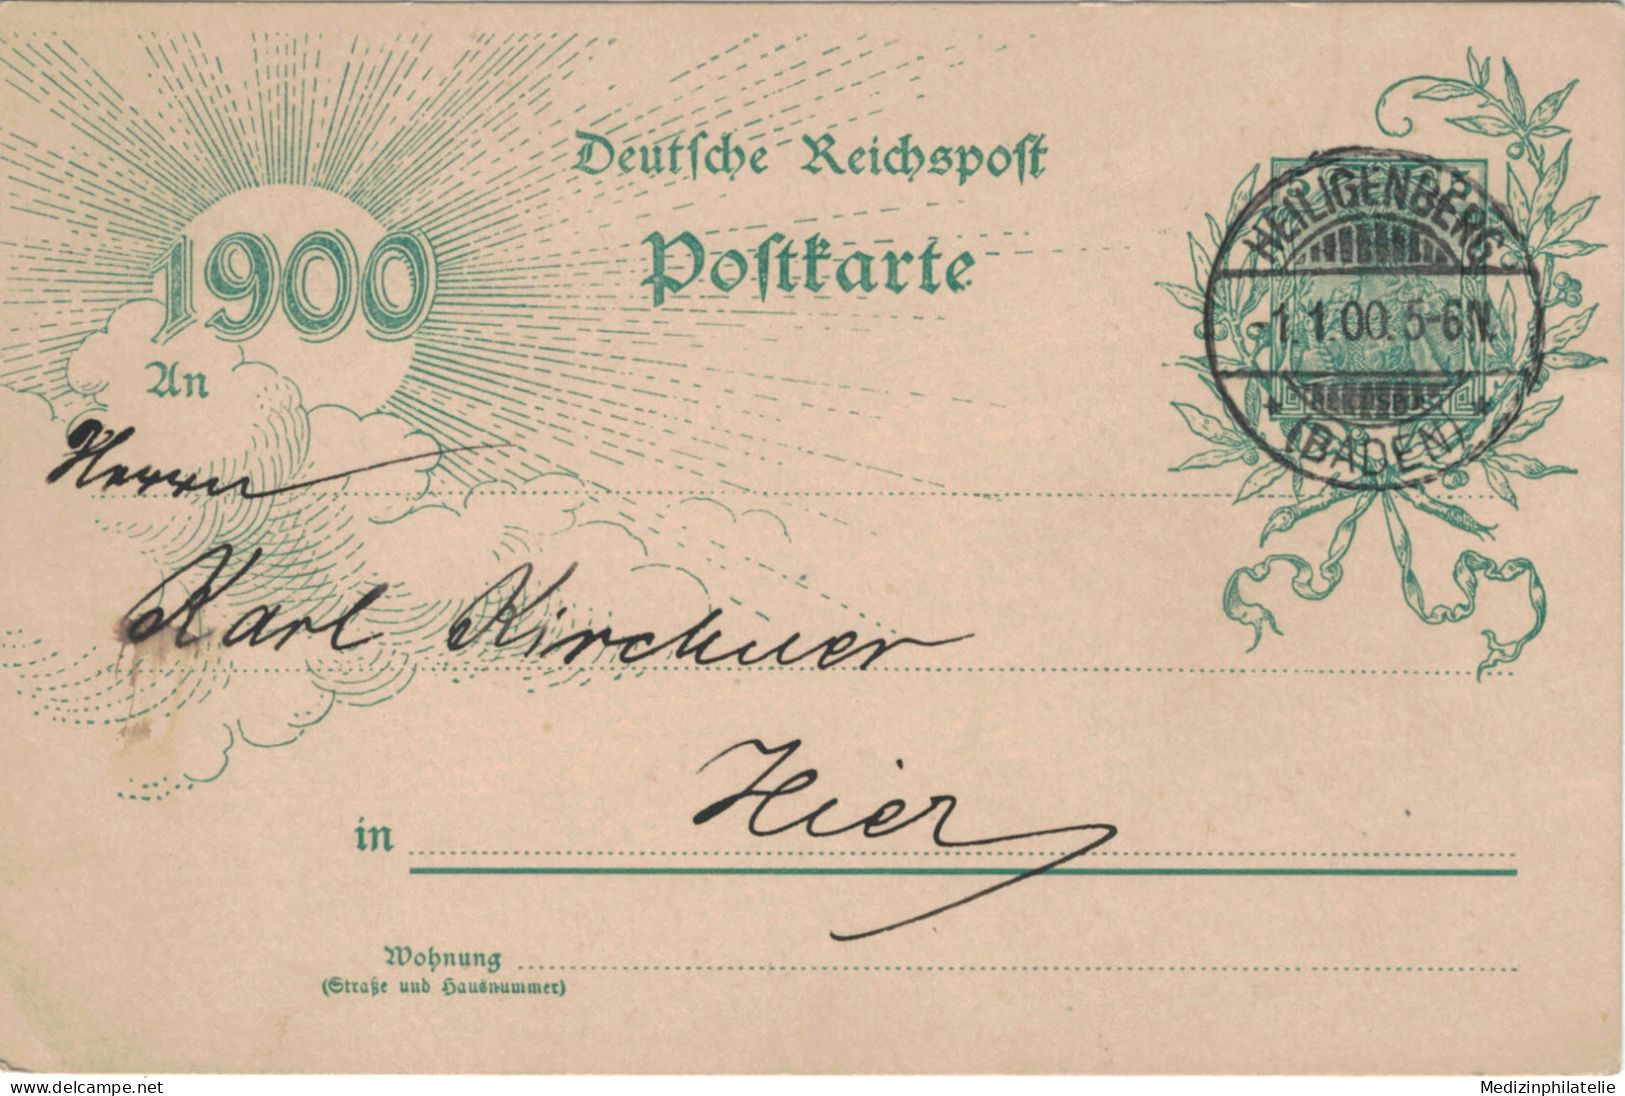 Ganzsache 5 Pfennig Jubiläumskarte 1900 - Ortskarte Heiligenberg 1.1.1900 - Postcards